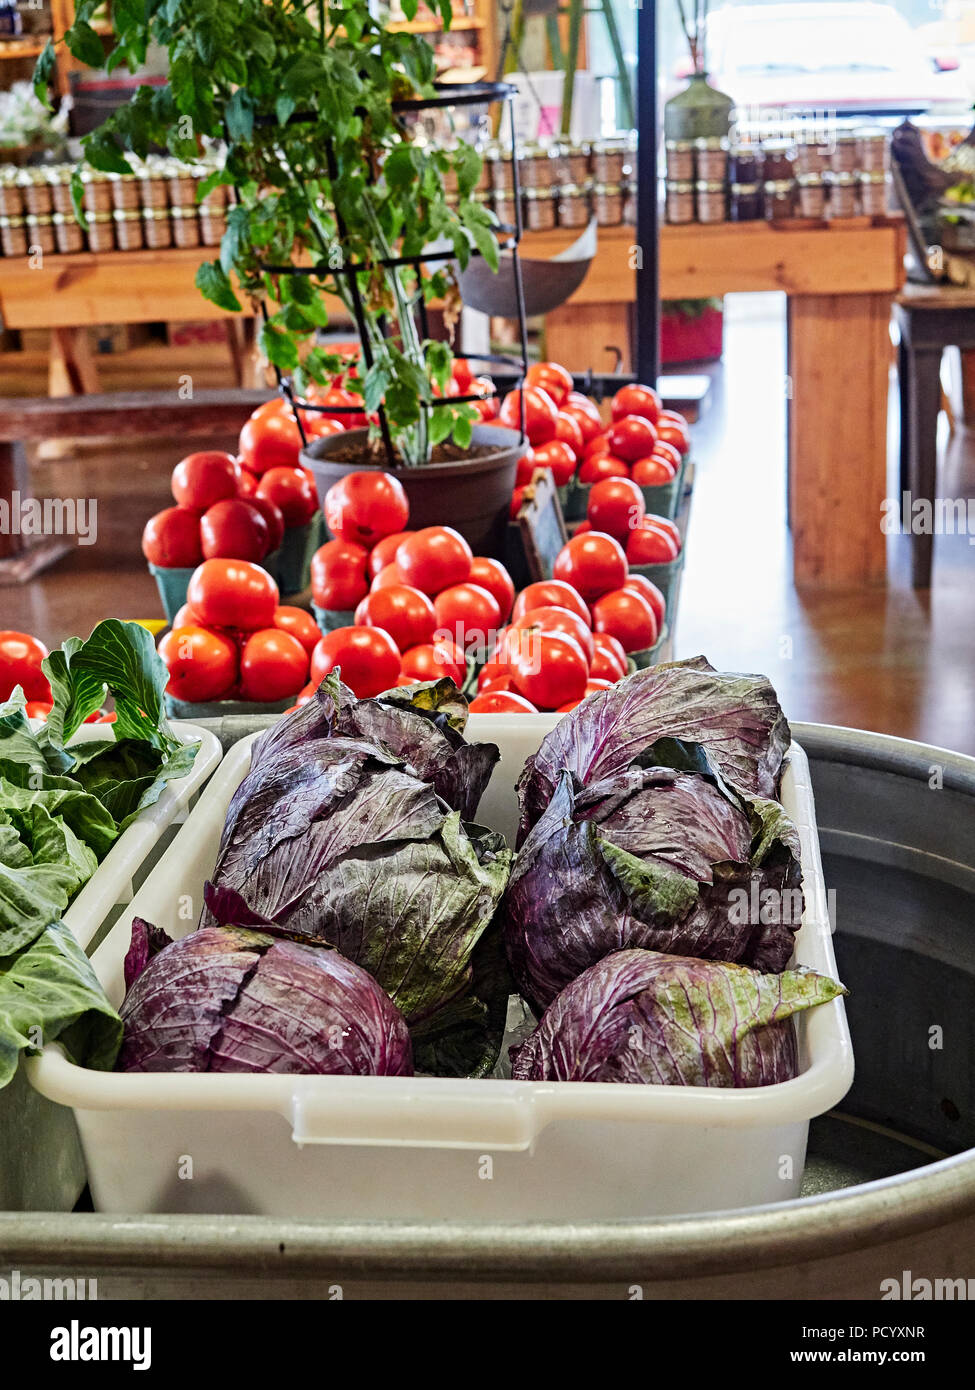 Fresco di cavolo rosso, basilico e pomodori sul display, per la vendita, in una fattoria sul ciglio della strada o mercato agricolo nelle regioni rurali in Alabama, Stati Uniti d'America. Foto Stock